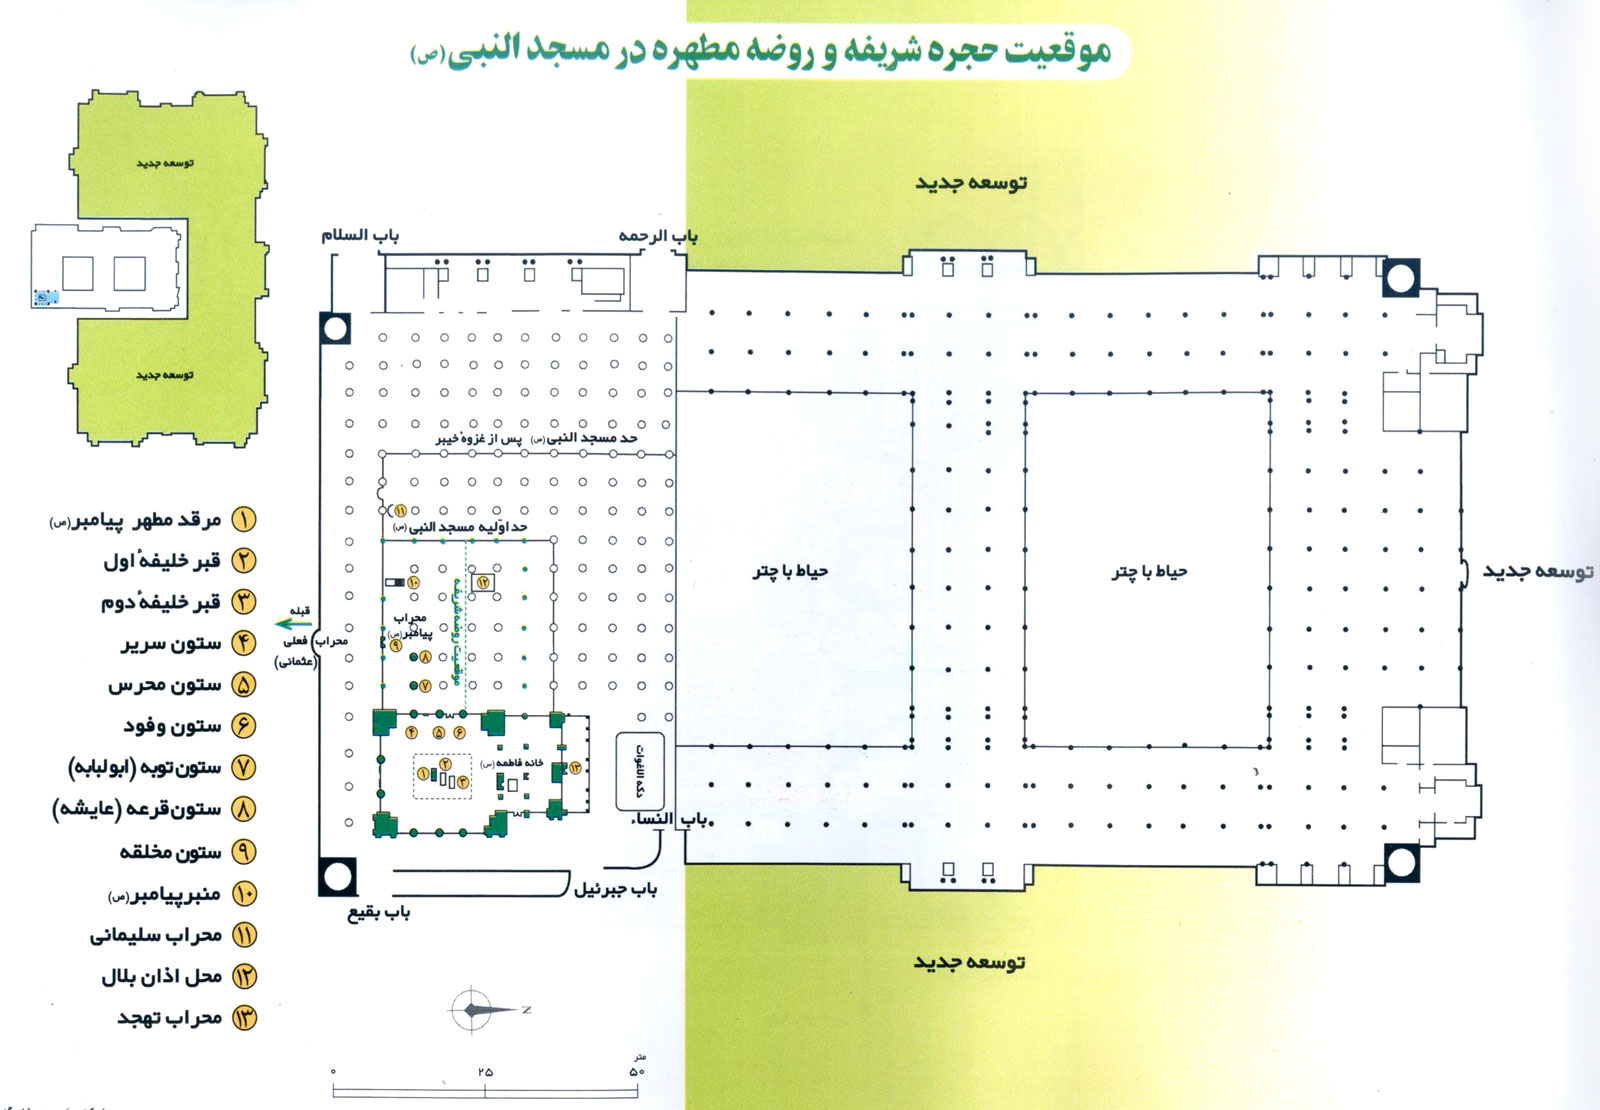 نقشه مسجدالنبی - مسجد پیغمبر - مسجدالنبی - مسجد قدیم